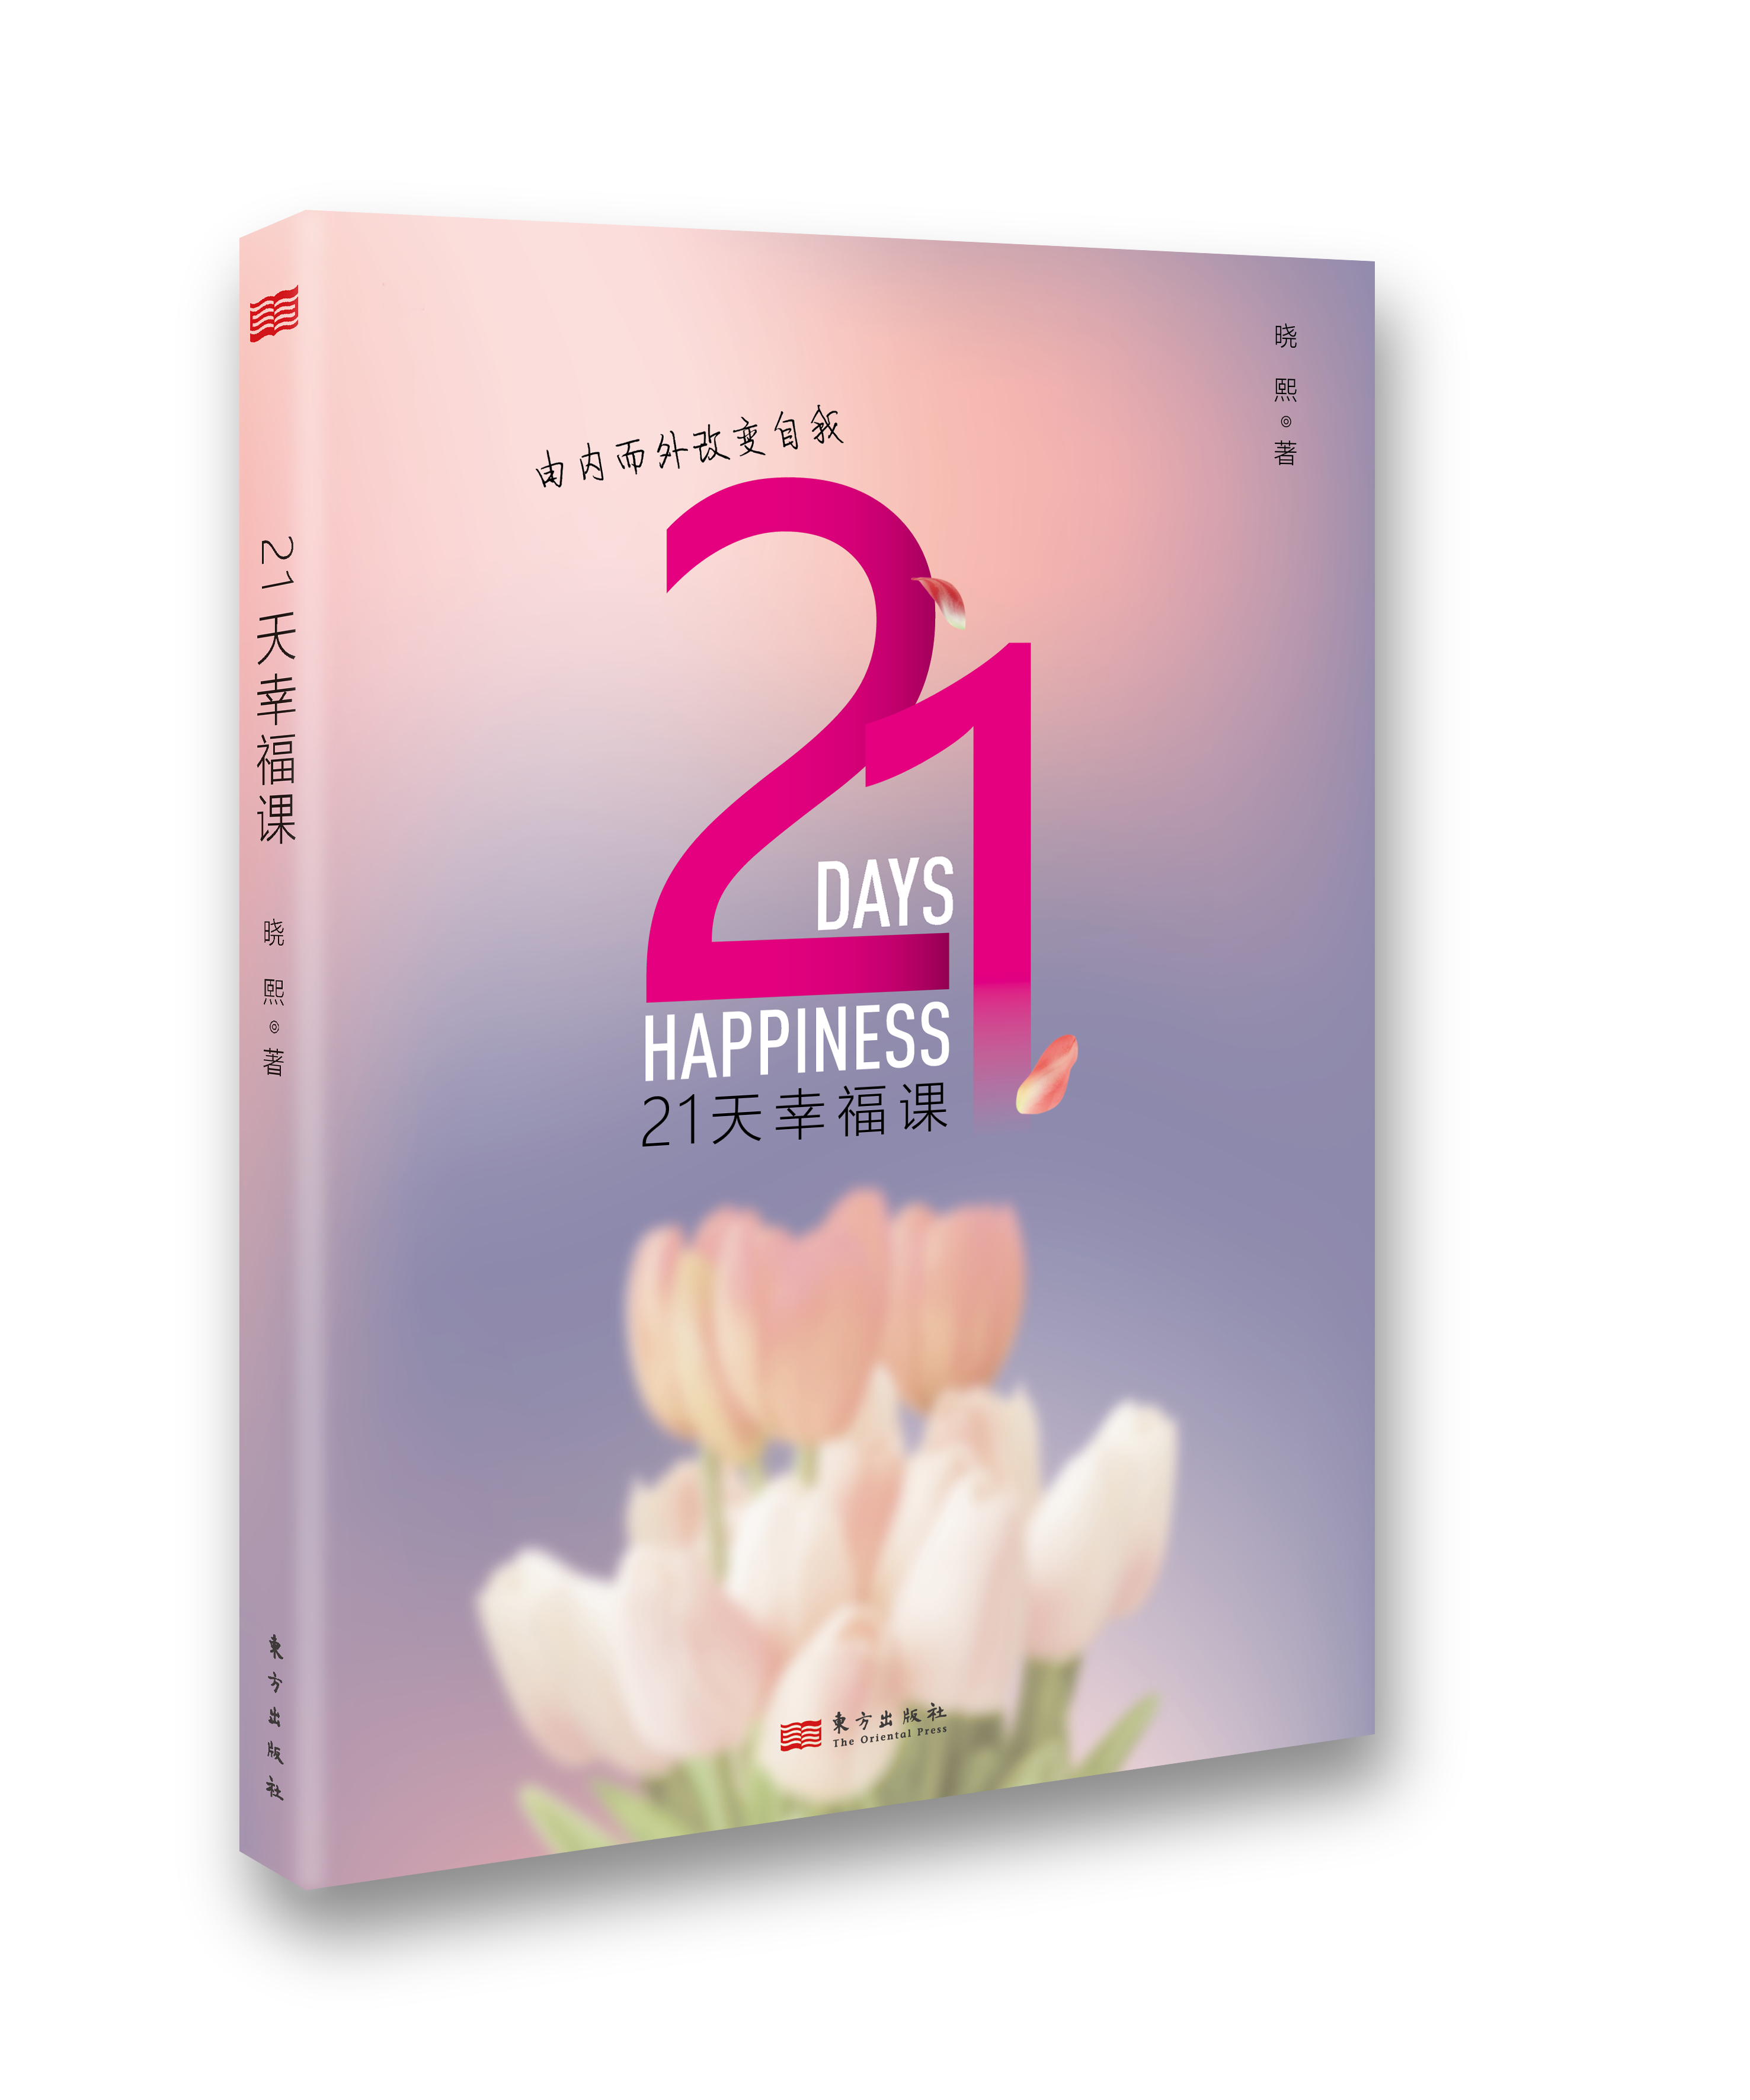 21天幸福课-研究学院大中华区总裁 晓熙女士专为中国人写作